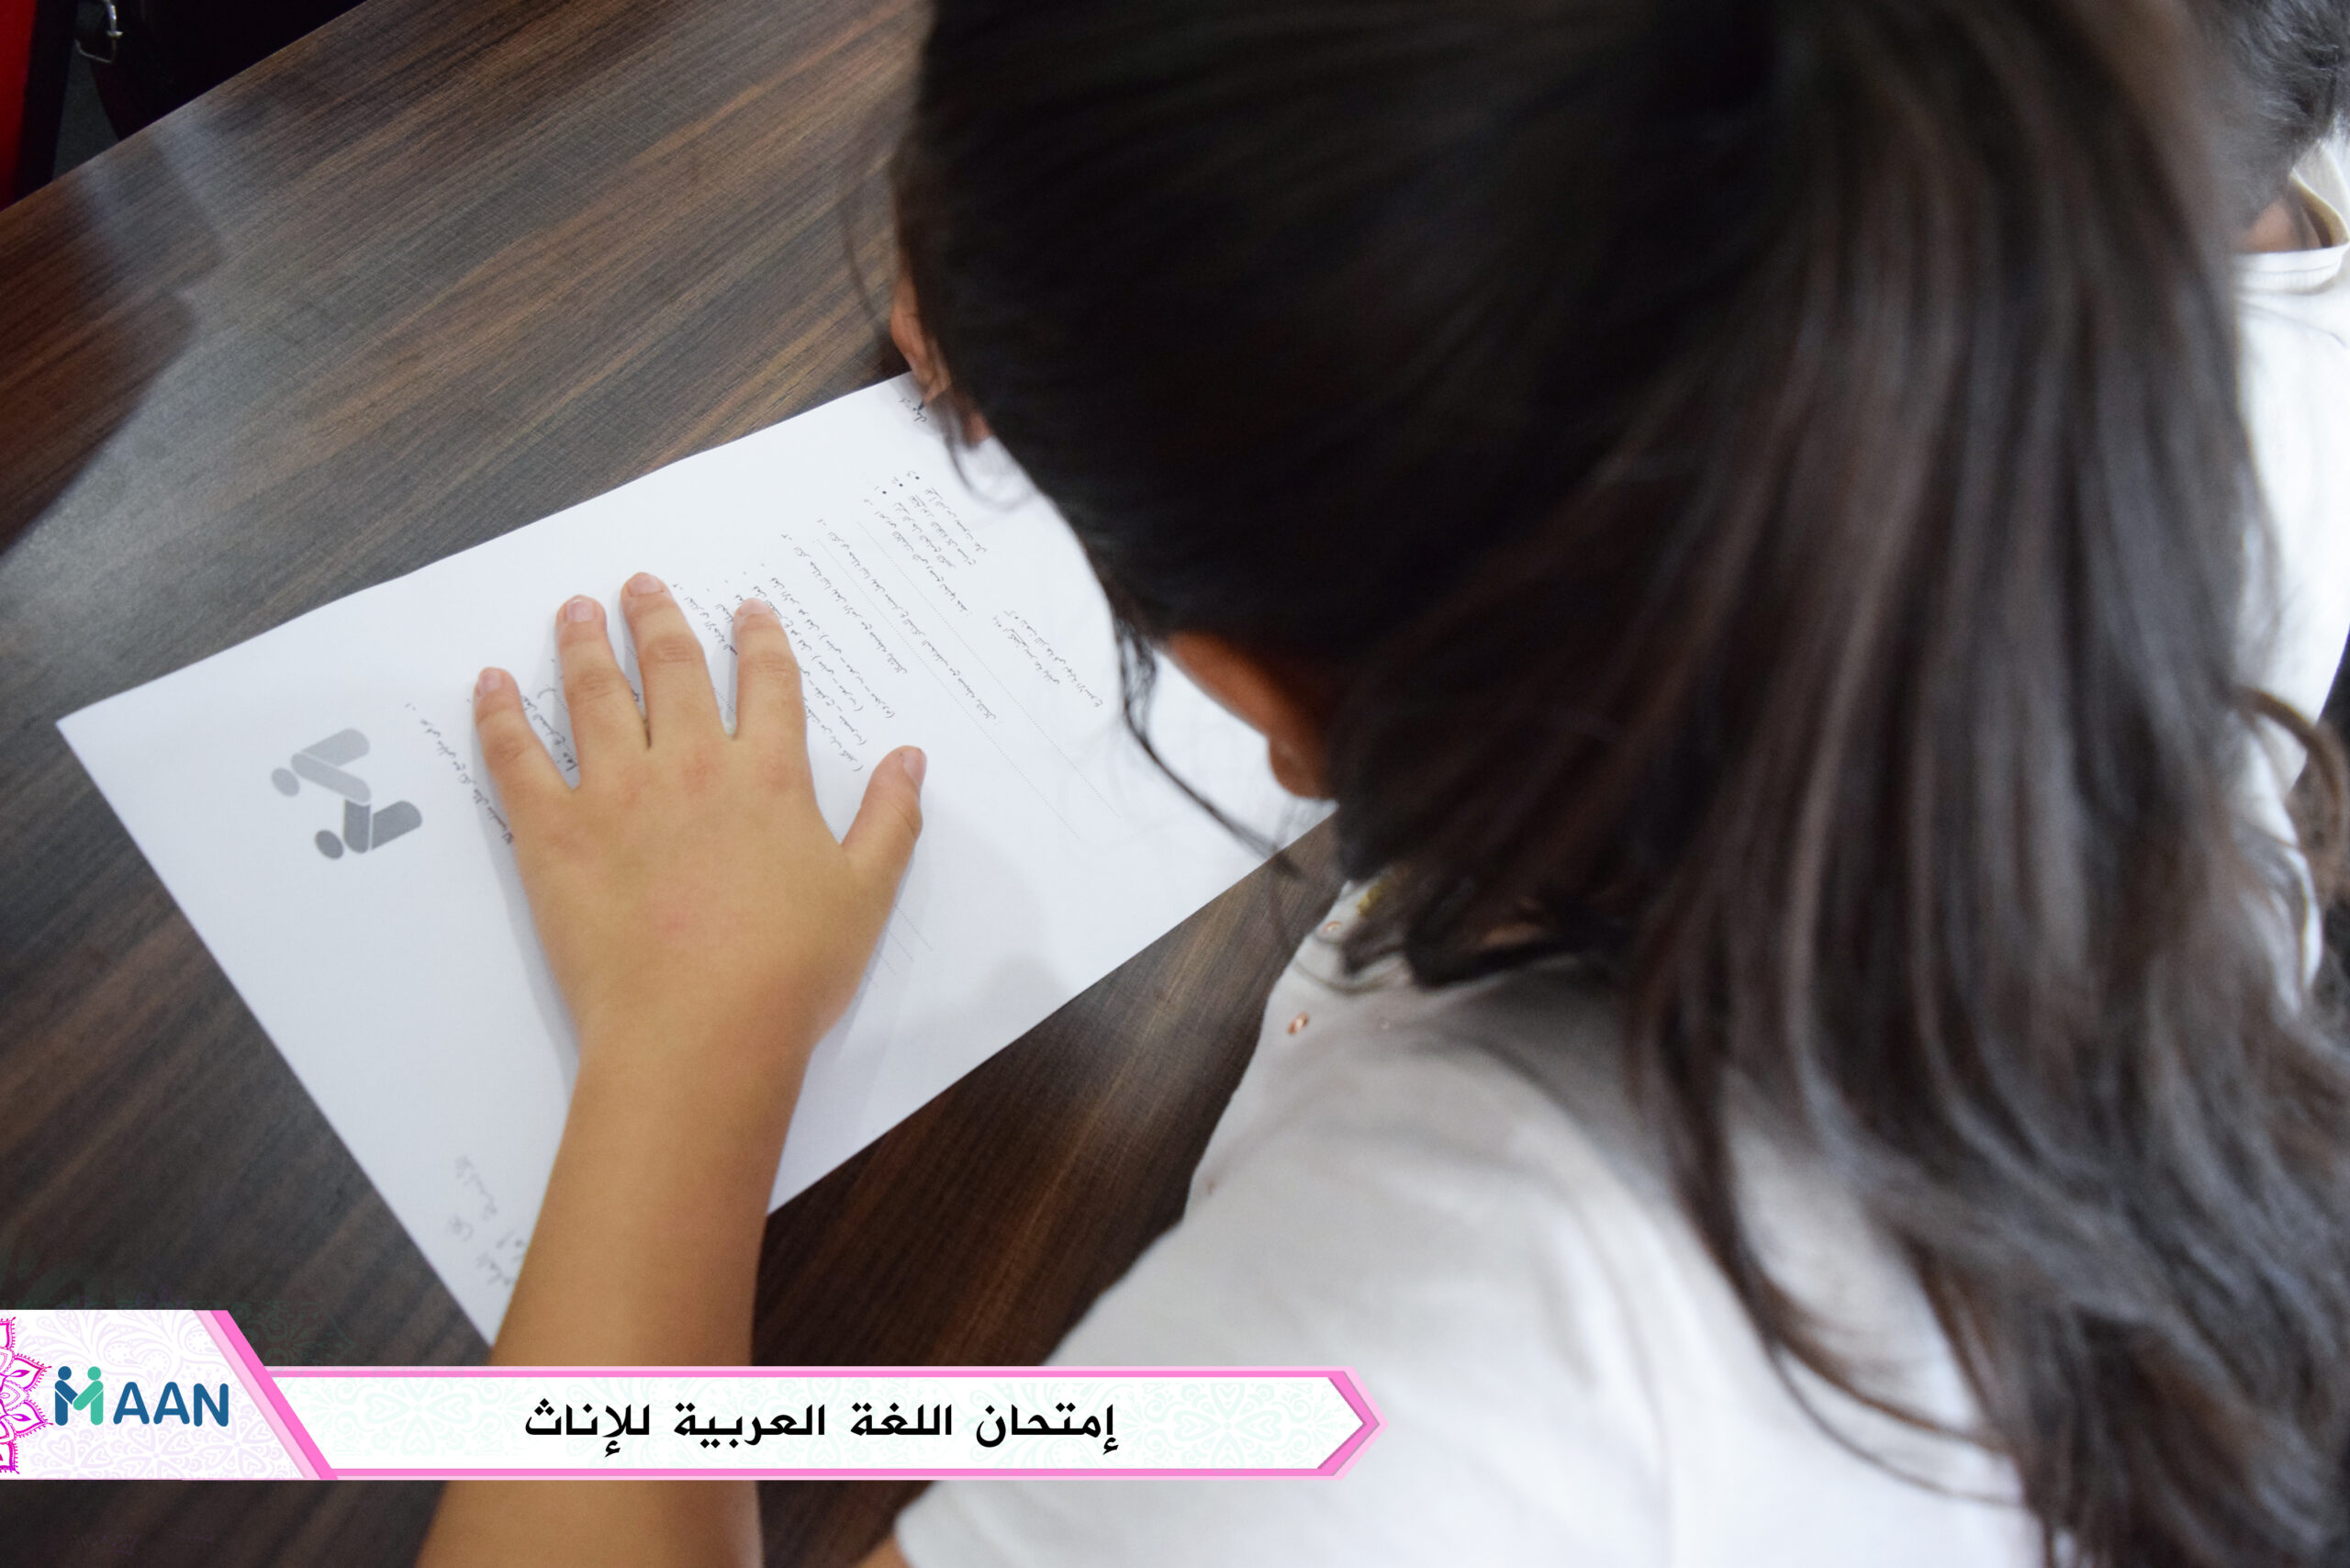 Female Section Arabic Language Exam